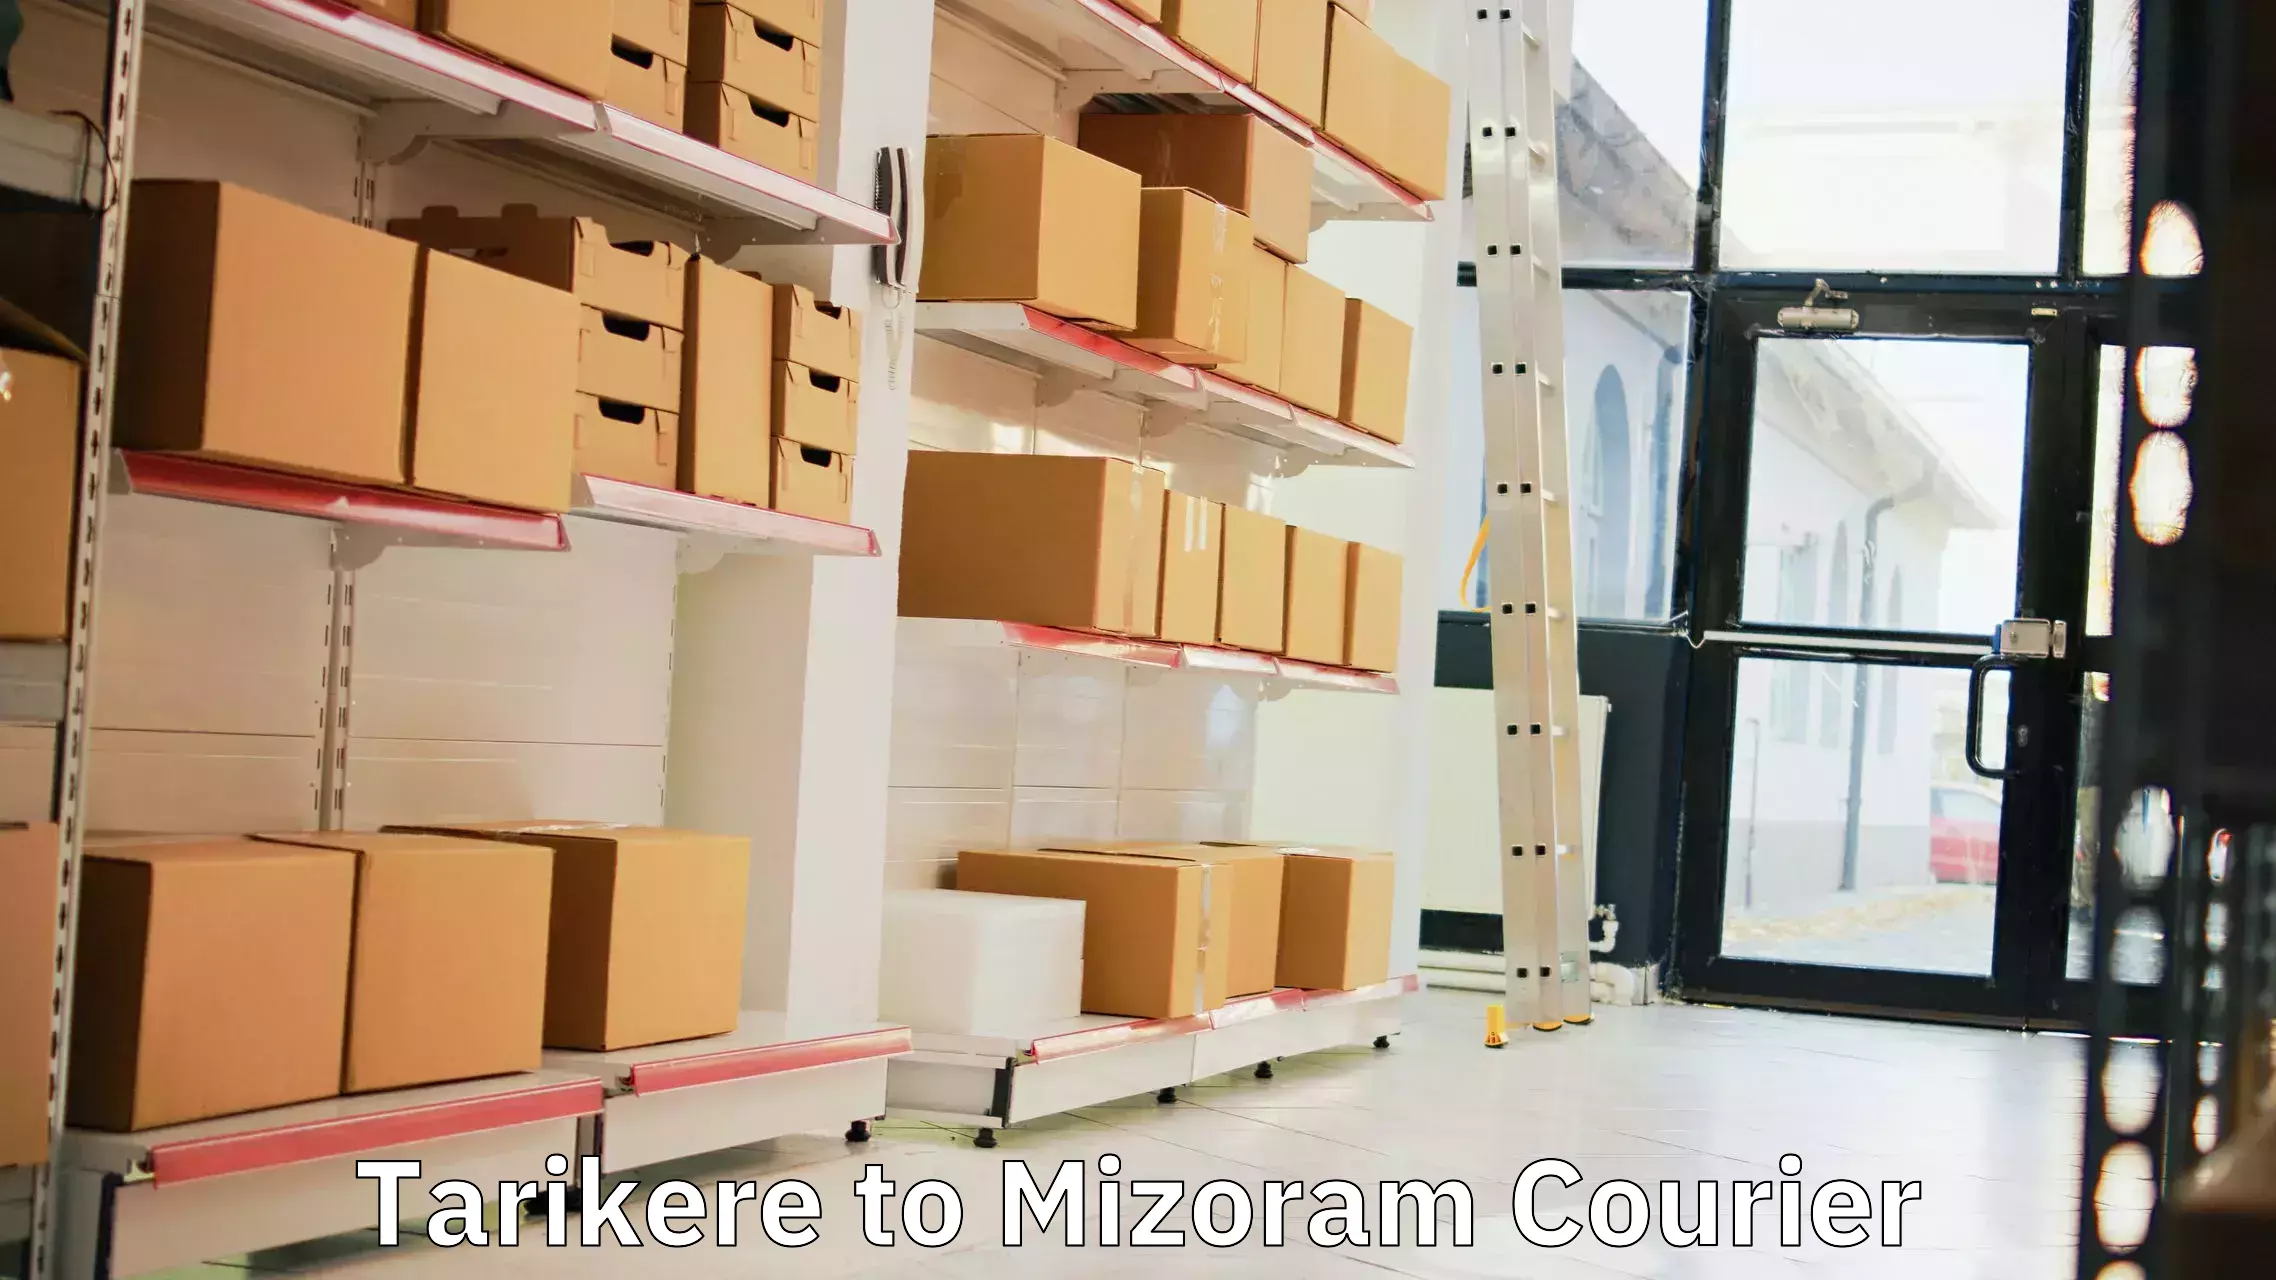 Premium courier solutions Tarikere to Mizoram